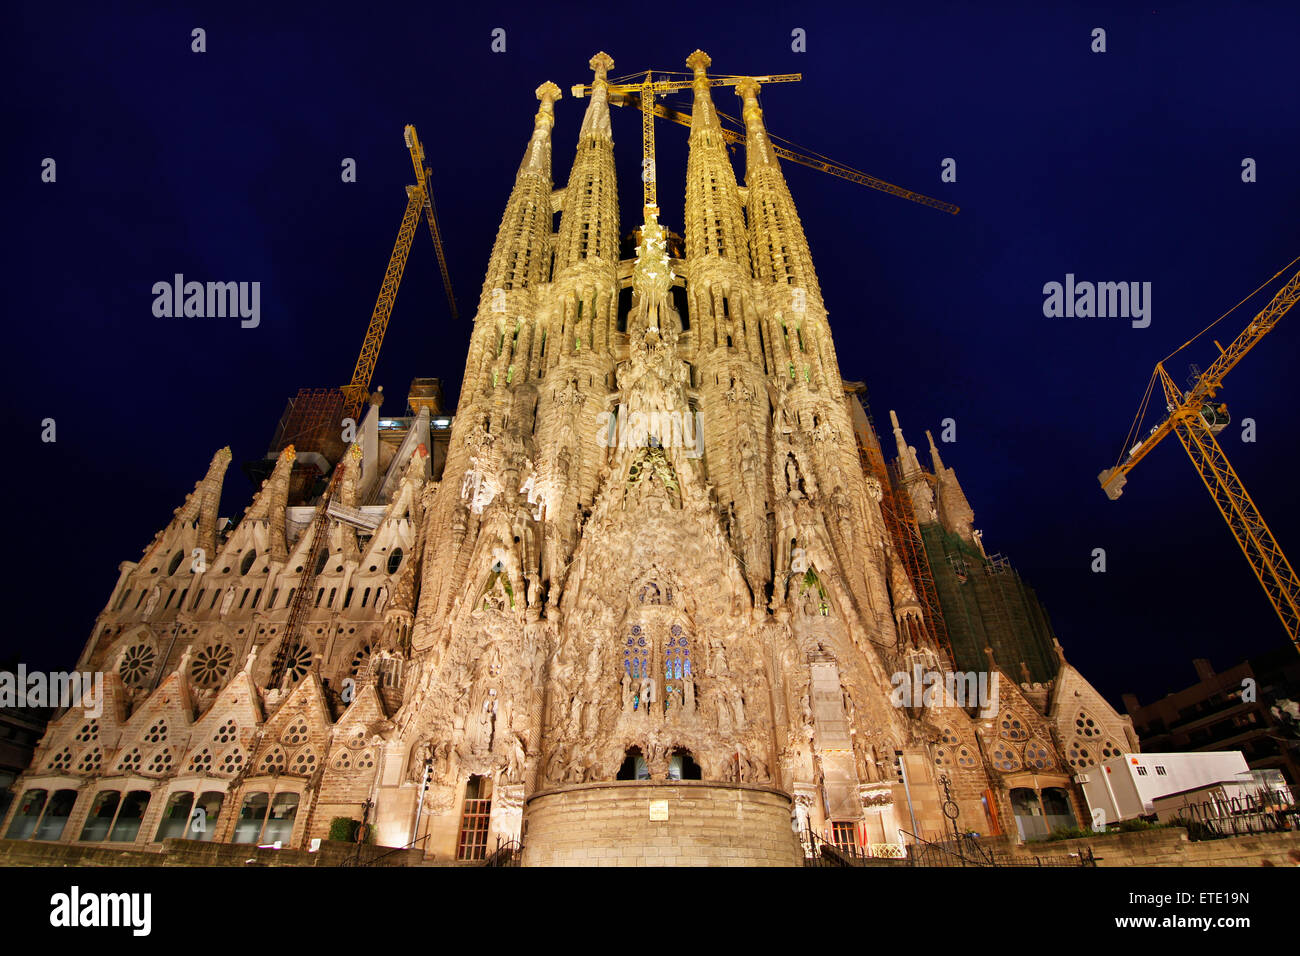 Sagrada Familia von Antoni Gaudí. Barcelona. Stockfoto